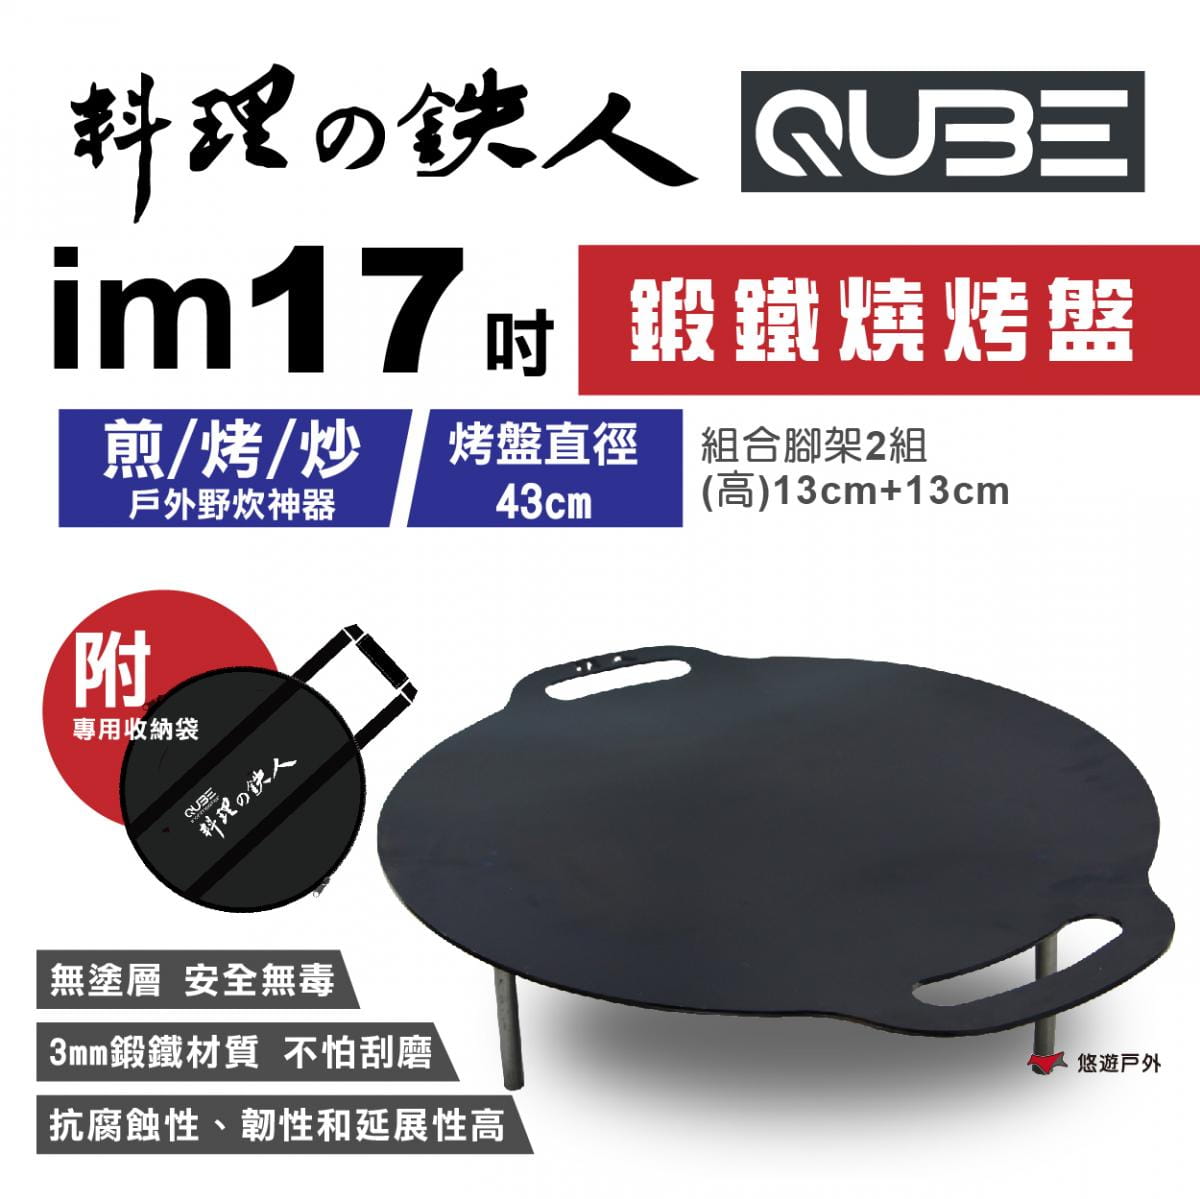 【QUBE】料理鐵人lm 17煎烤盤(含袋) 0